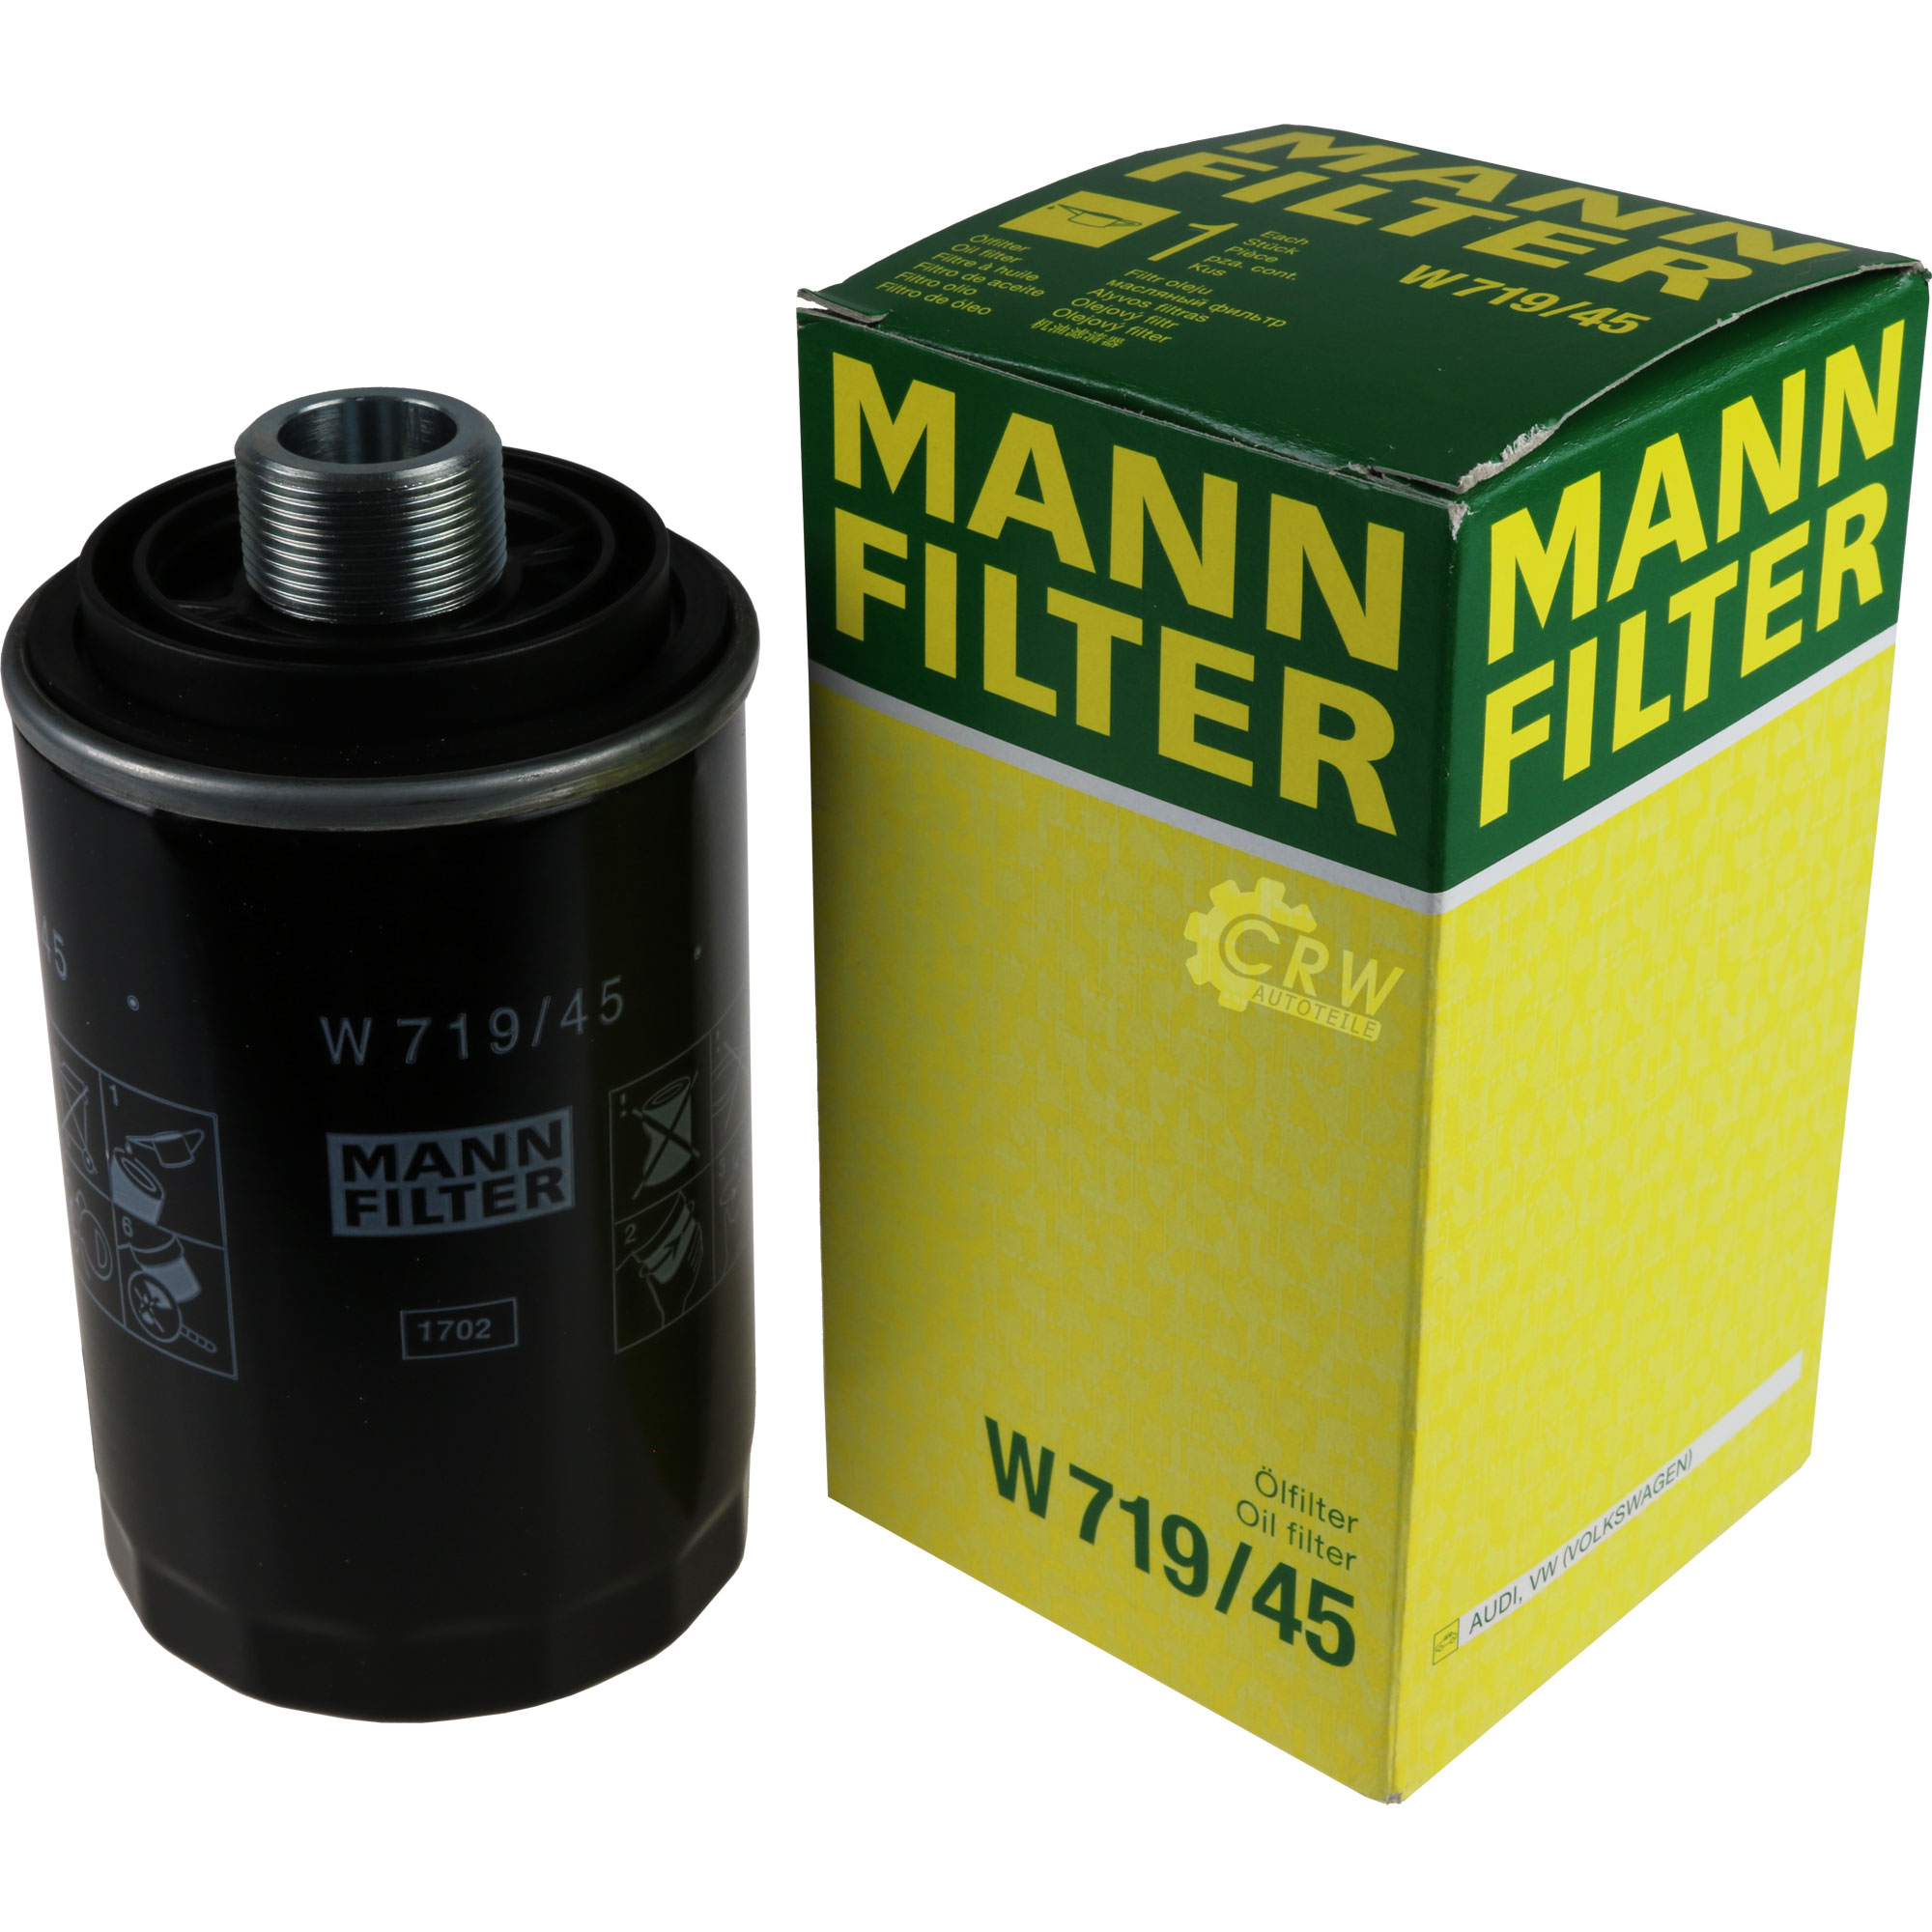 MANN-FILTER Ölfilter W 719/45 Oil Filter